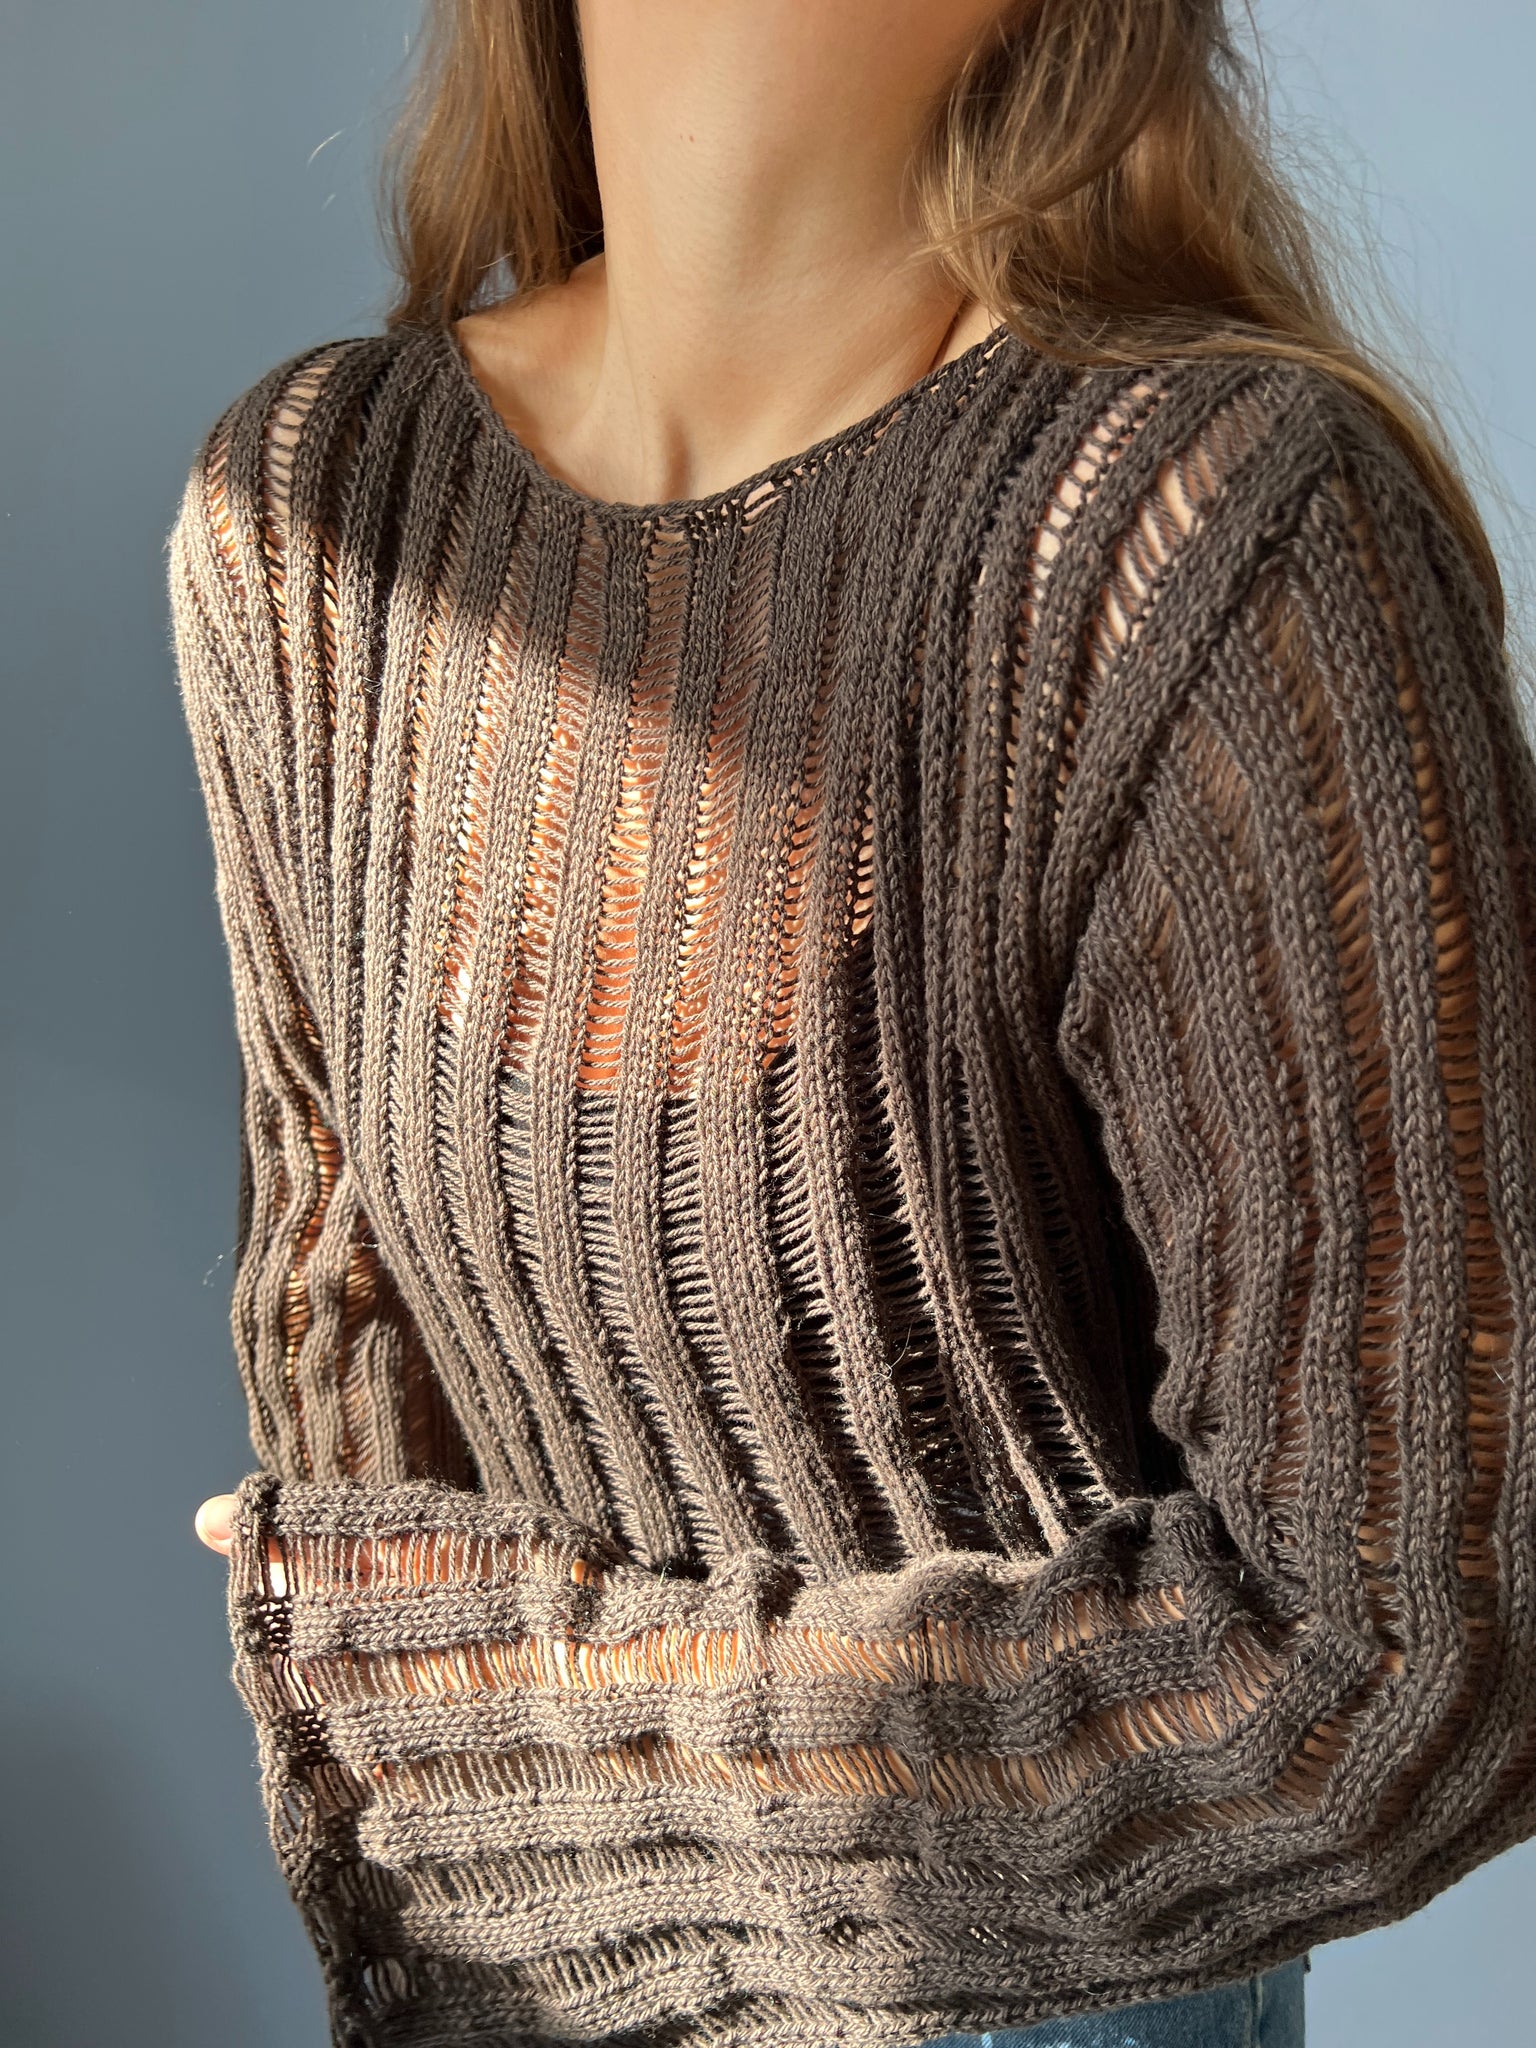 Fordi Pludselig nedstigning Settlers Deima's air blouse - knitting pattern (dansk) – Deima Knitwear